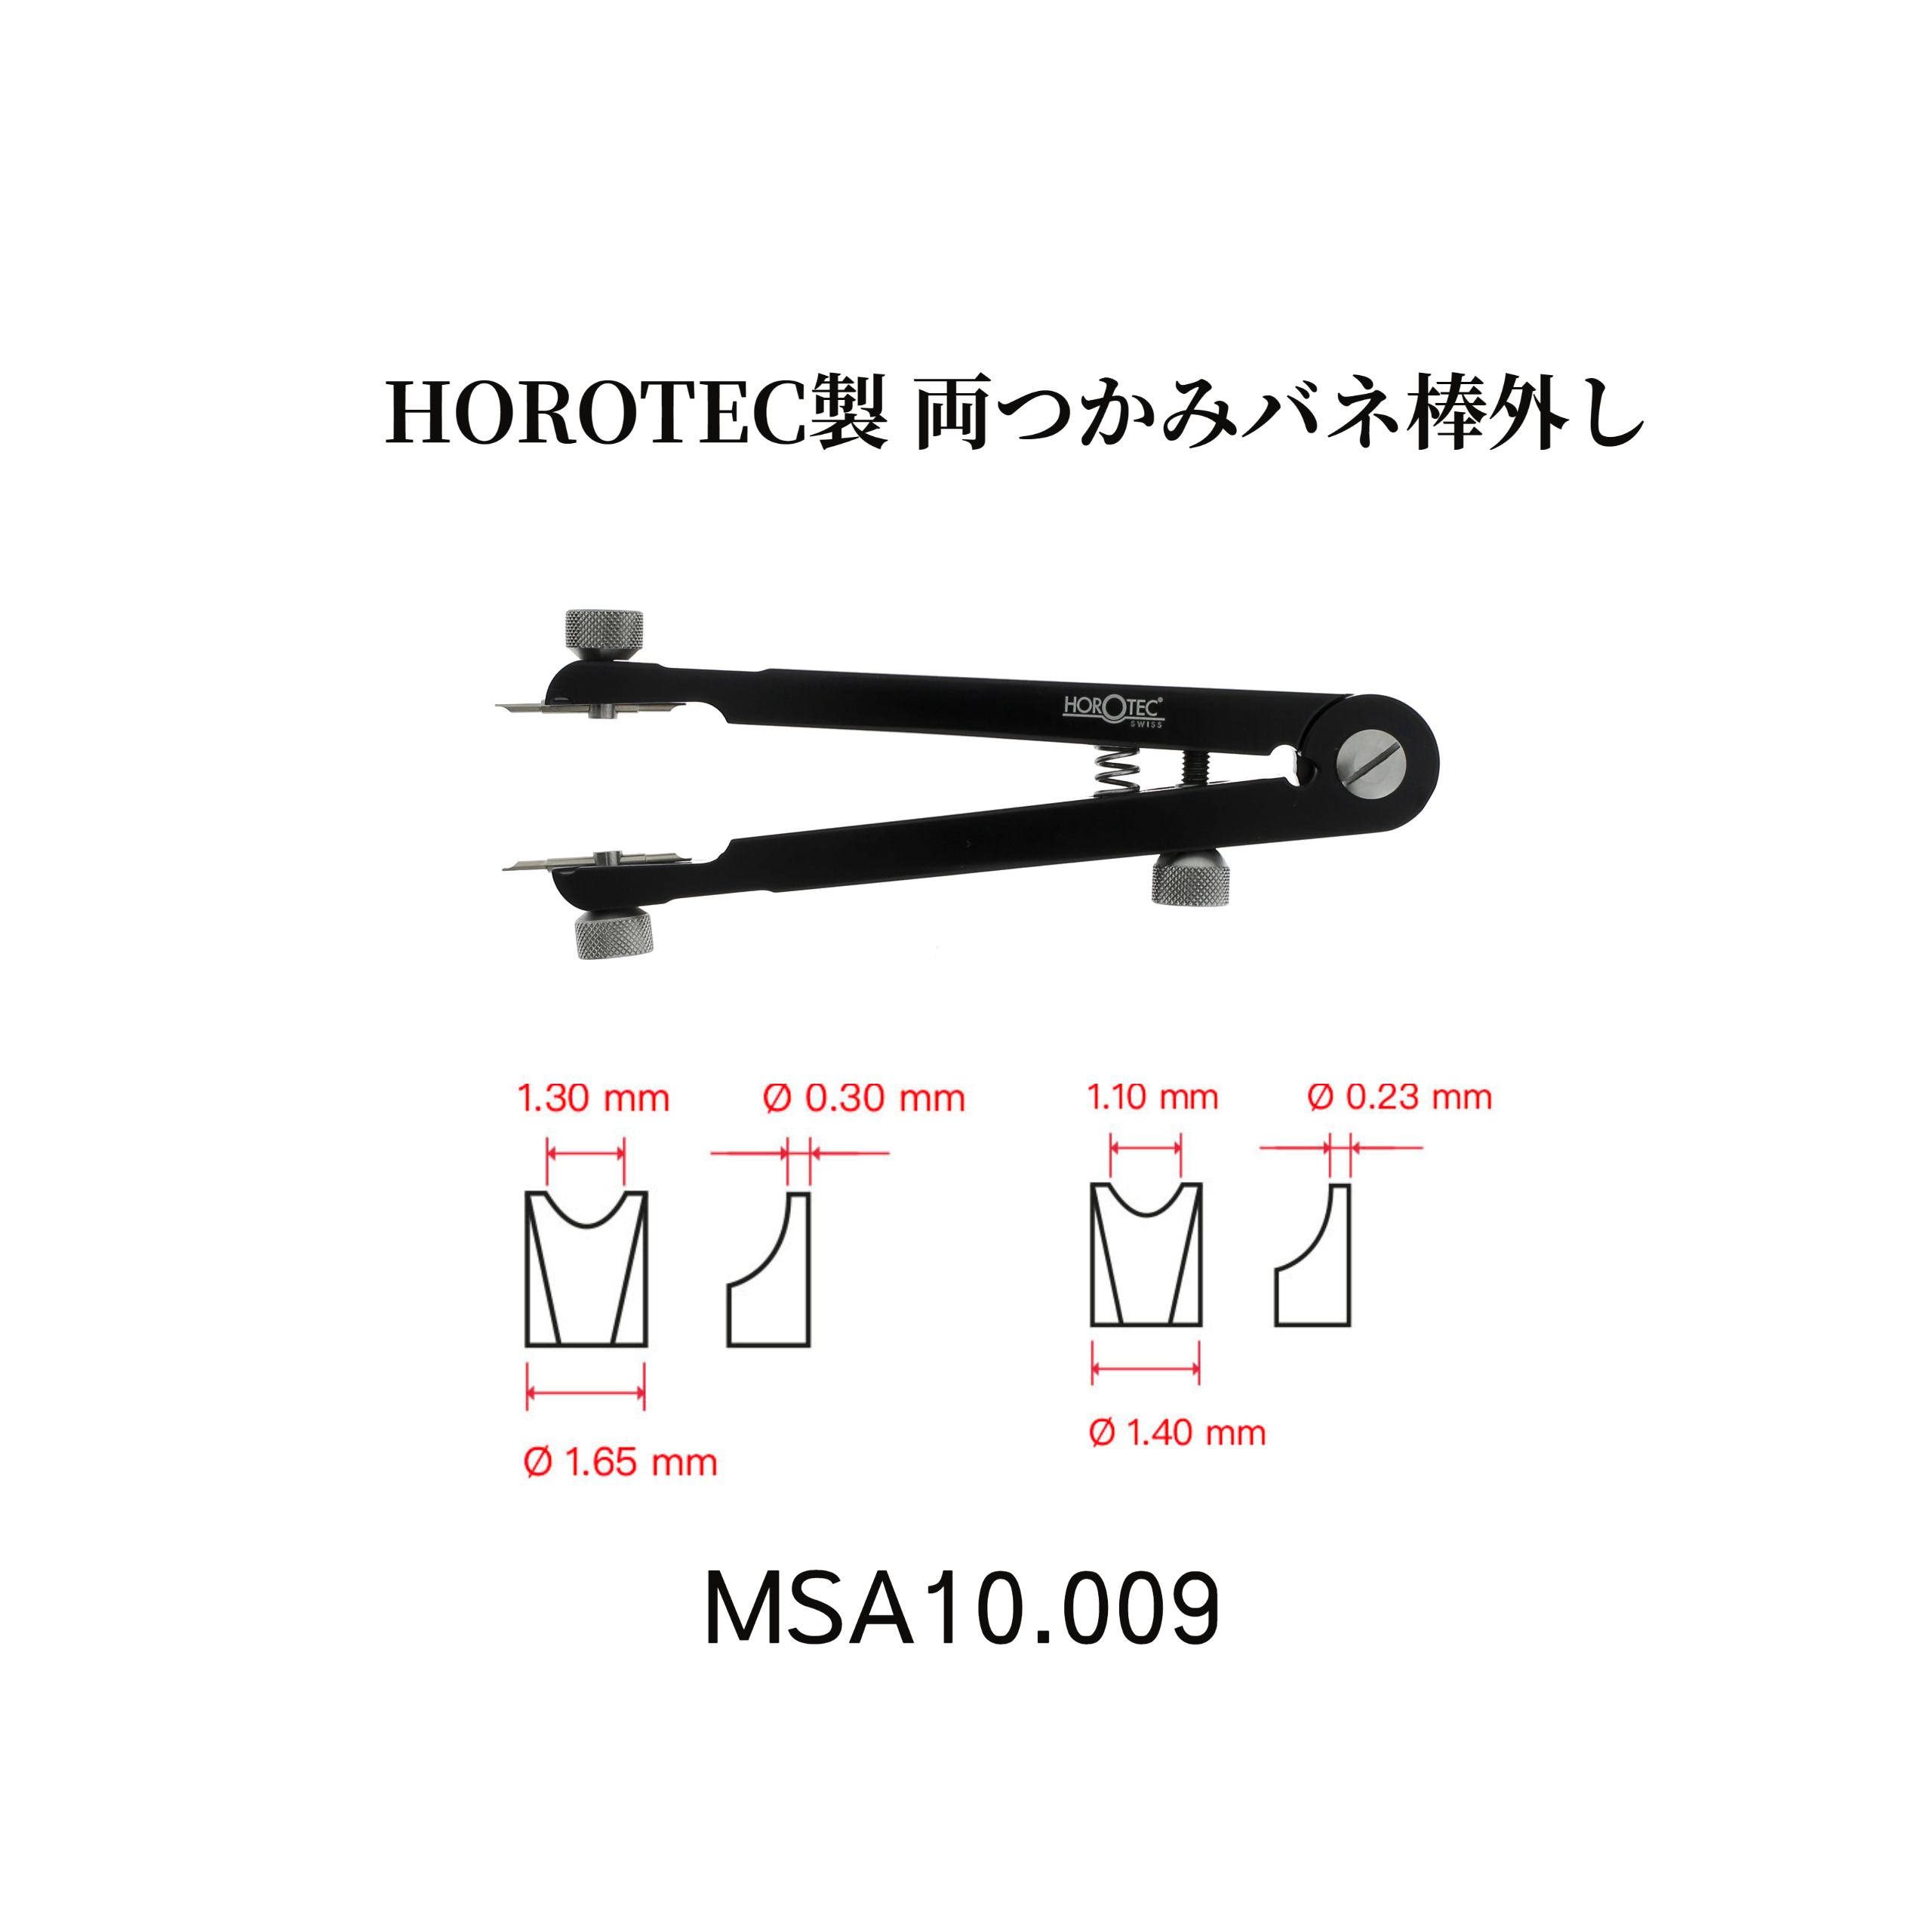 HOROTEC製両つかみバネ棒外しMSA10.009